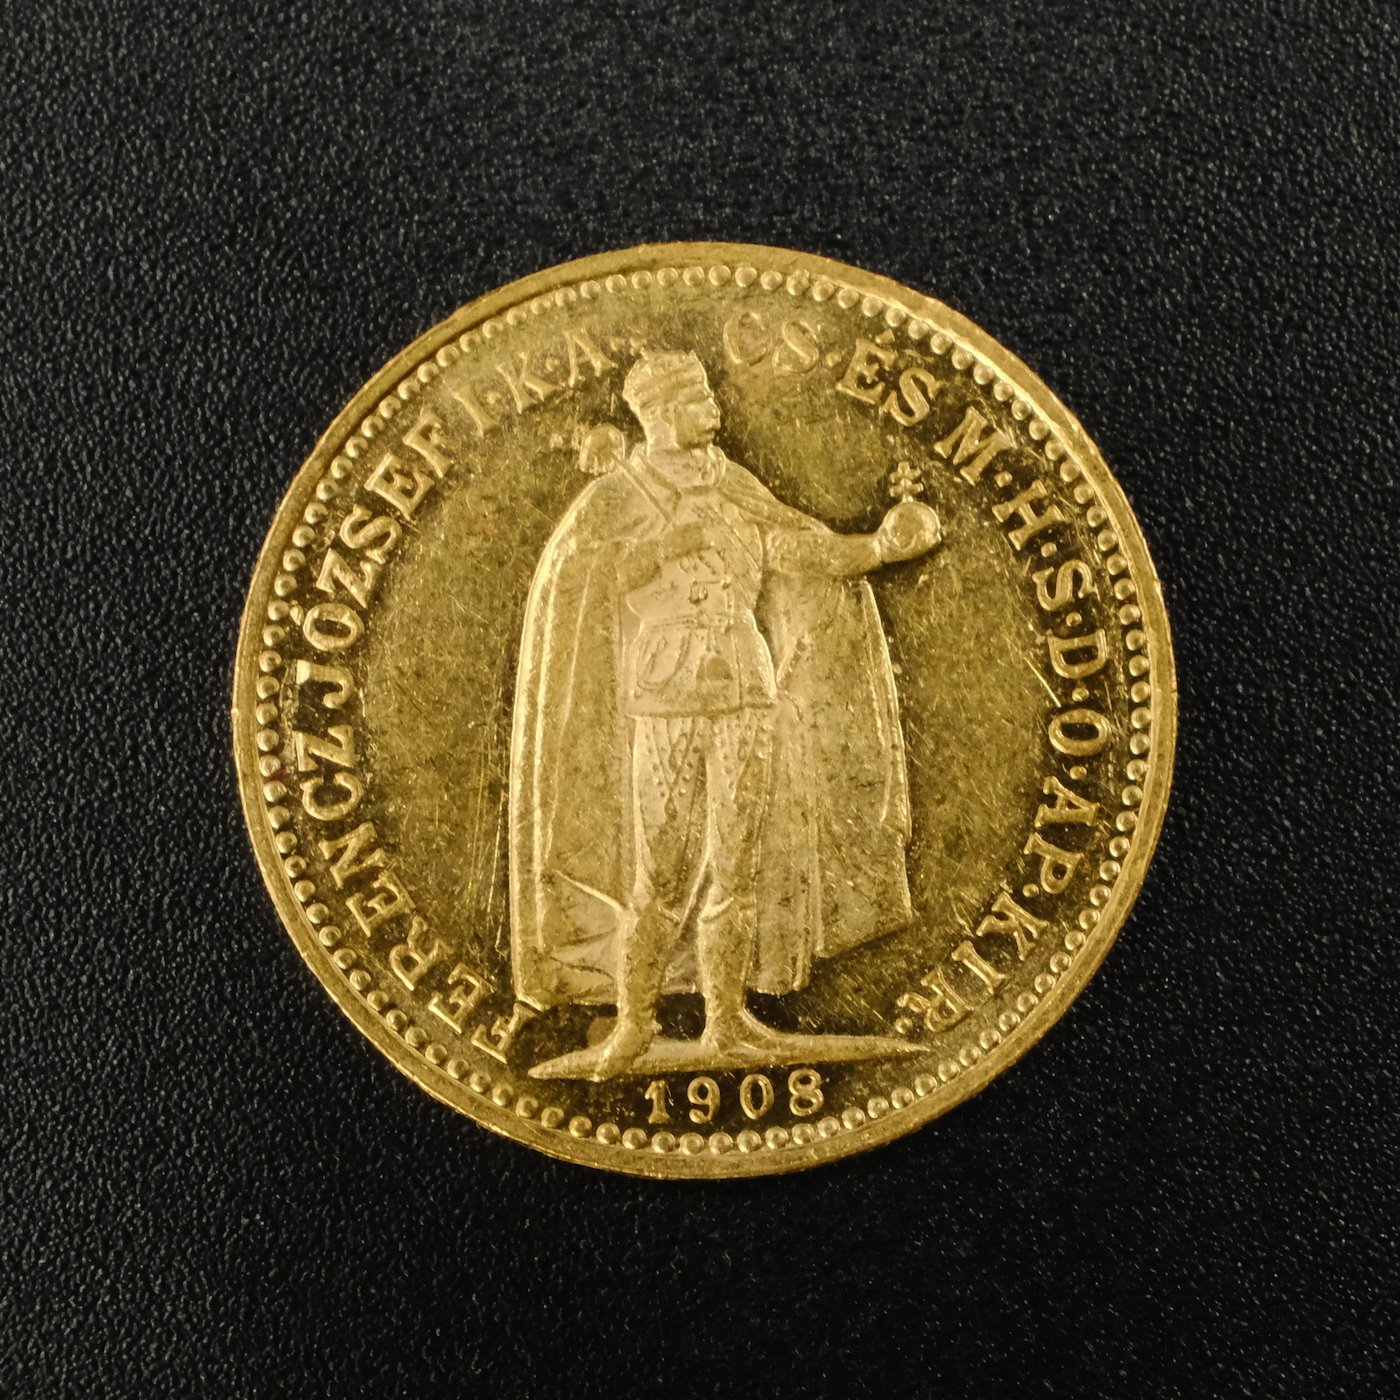 Mince - Rakousko Uhersko zlatá 10 Koruna 1908 K.B. uherská, zlato 900/1000, hrubá hmotnost mince 3,387g 